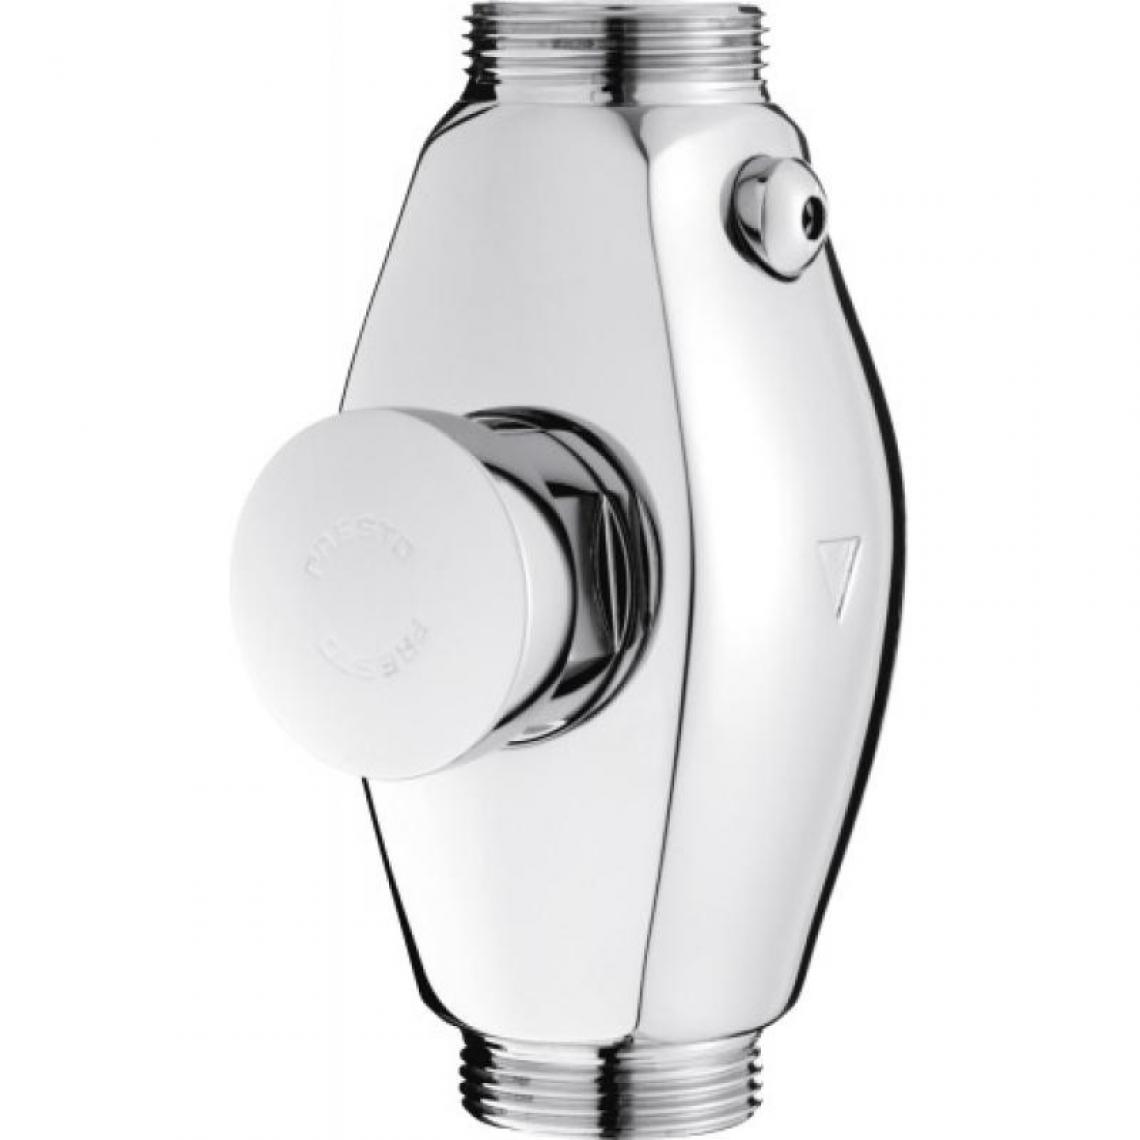 Presto - Robinet applique Presto Eclair XL avec robinet darrêt 1301 - Chasse d'eau